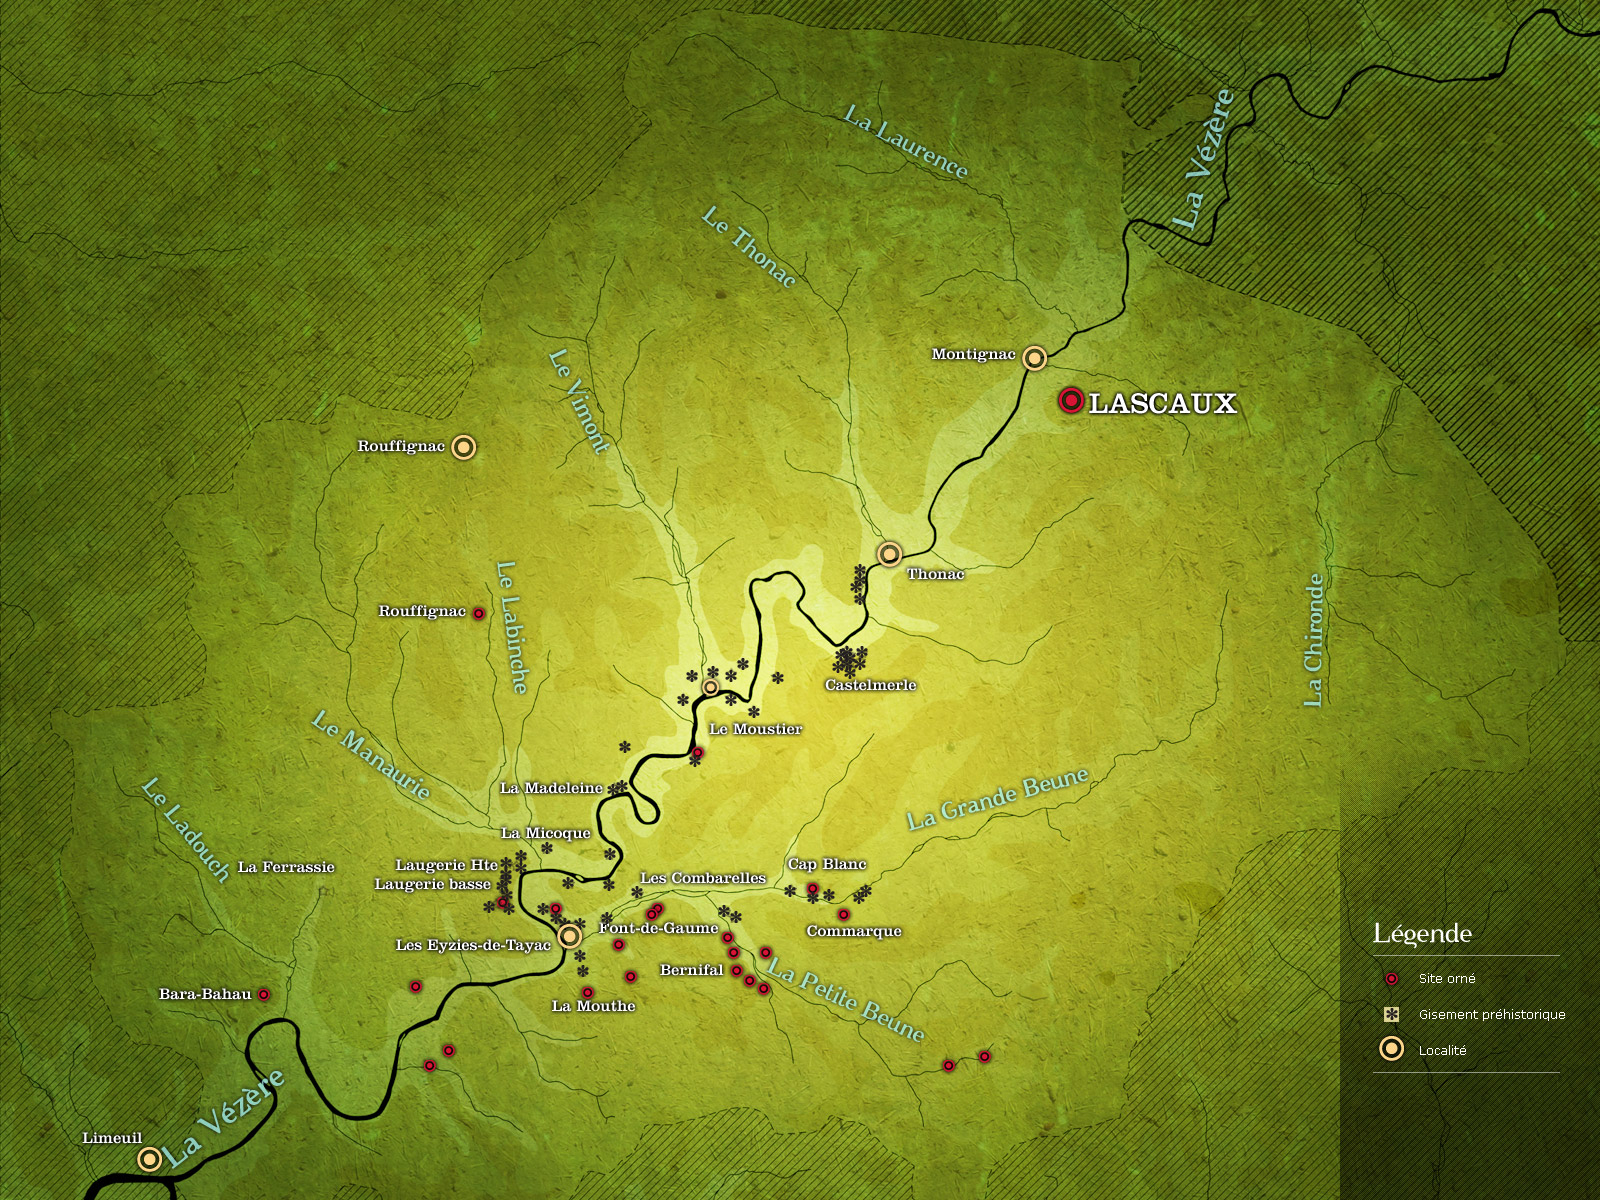 Carte de localisation des sites préhistoriques dans la Vallée de la Vézère